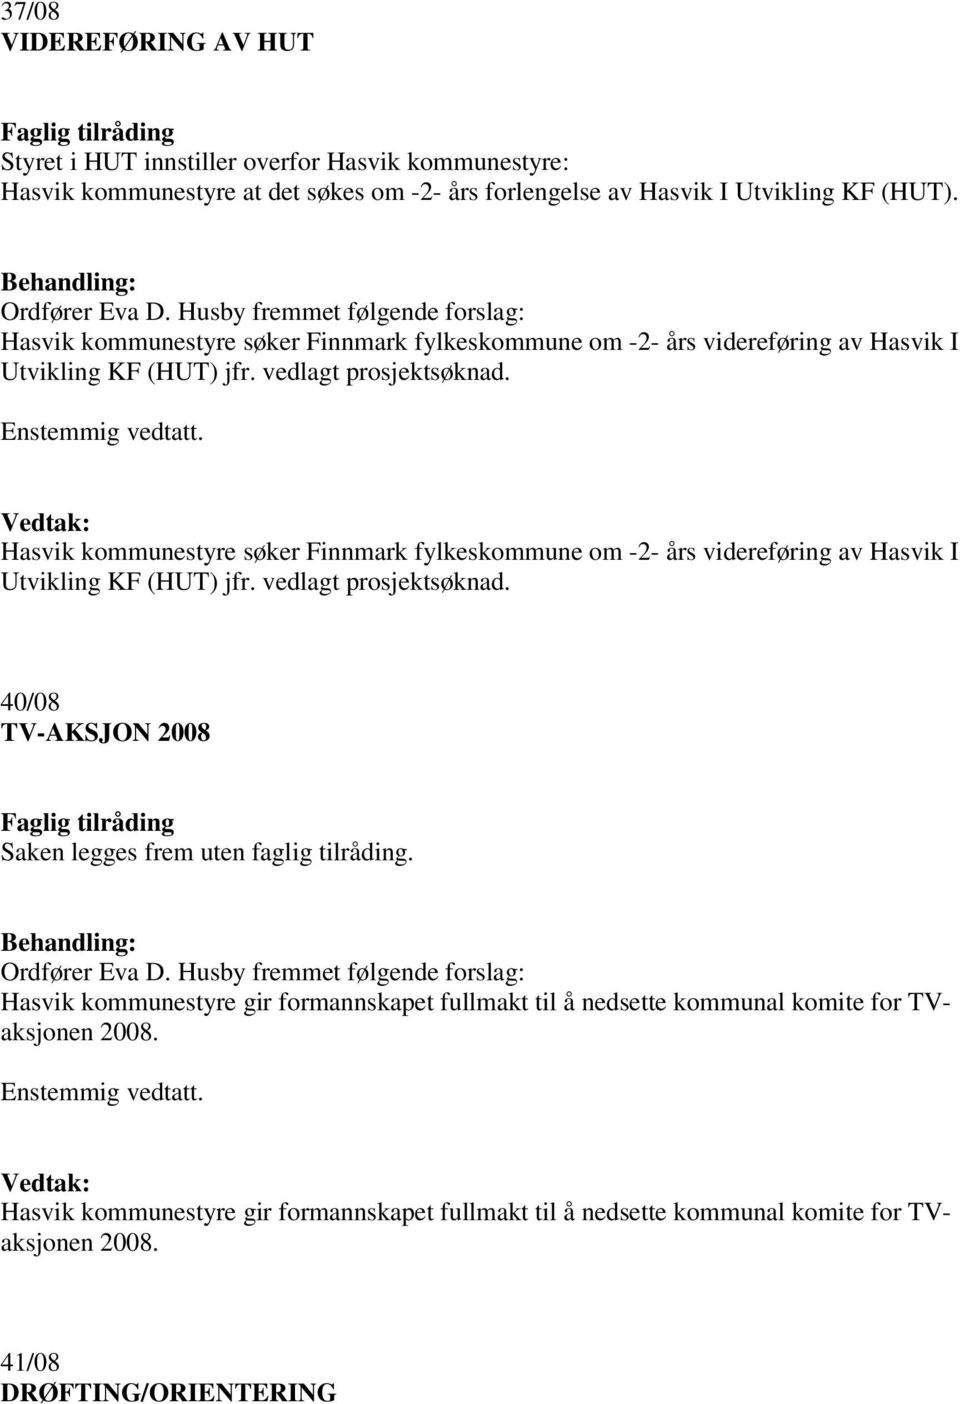 Hasvik kommunestyre søker Finnmark fylkeskommune om -2- års videreføring av Hasvik I Utvikling KF (HUT) jfr. vedlagt prosjektsøknad. 40/08 TV-AKSJON 2008 Saken legges frem uten faglig tilråding.